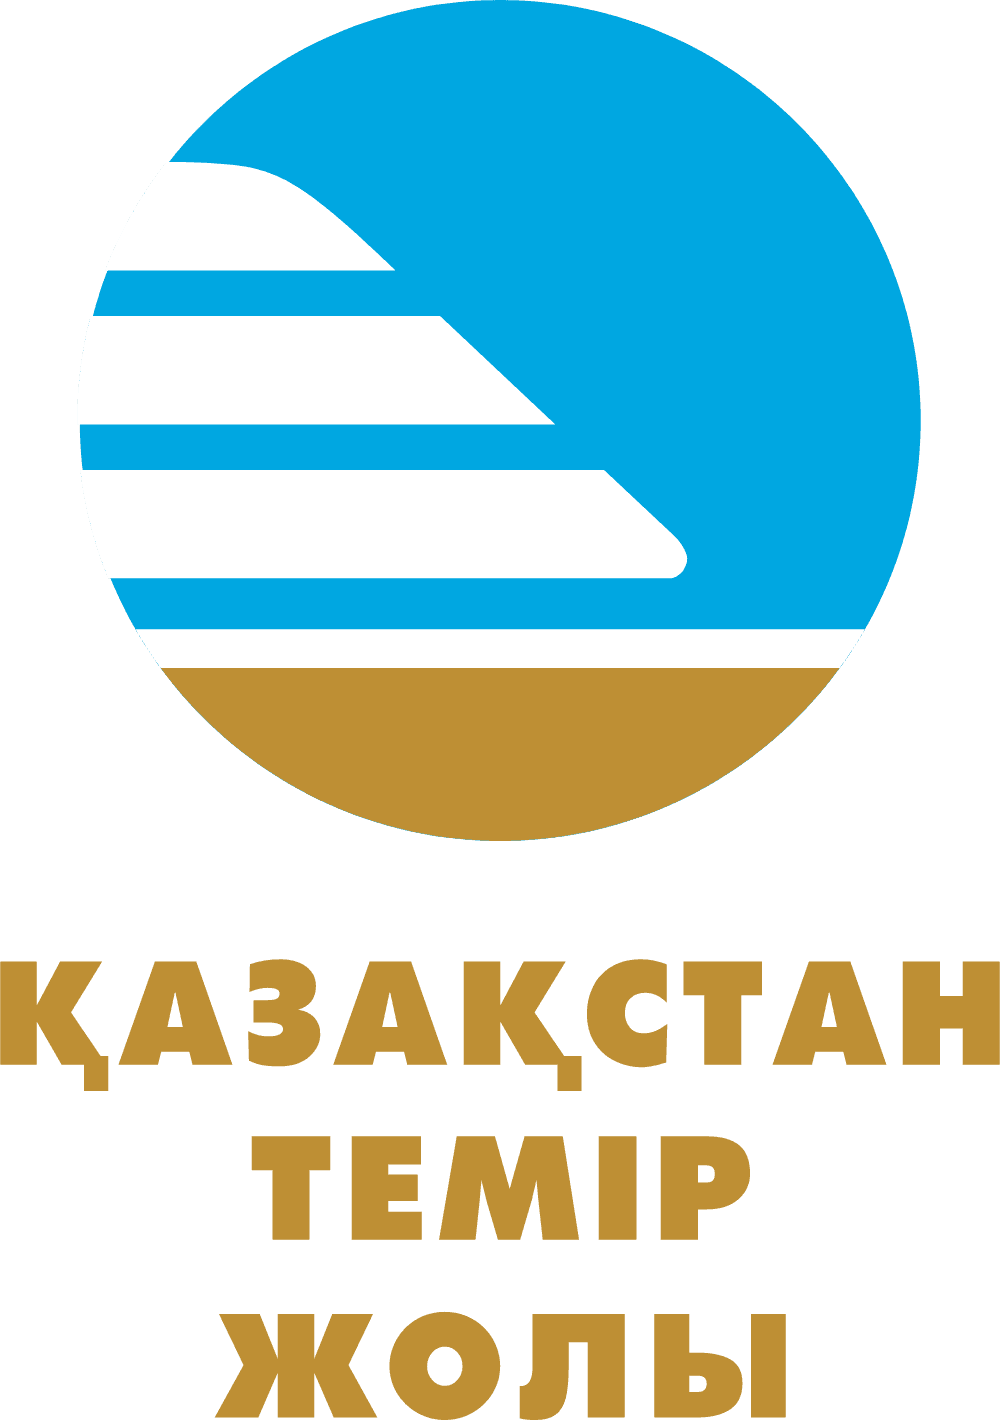 Kazakstan Temir Zholy Logo download